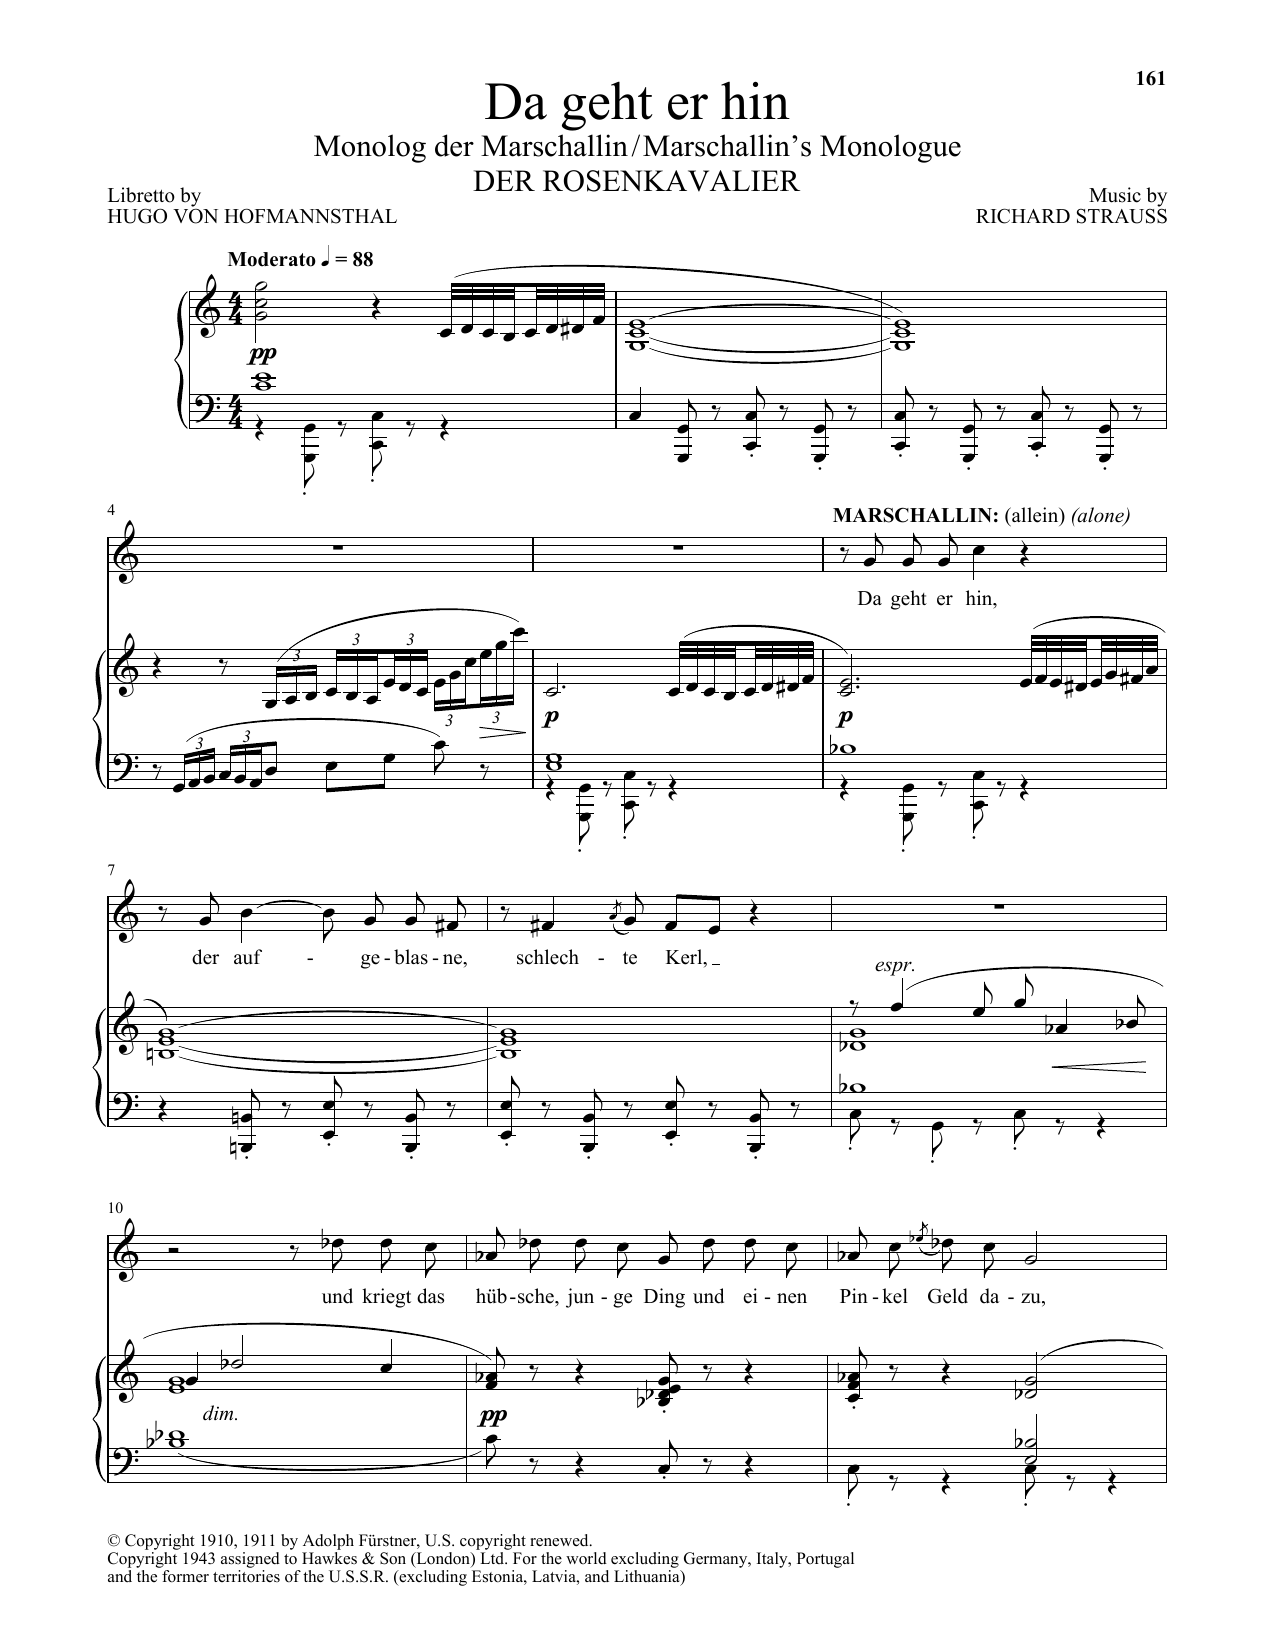 Download Richard Strauss Da Geht Er Hin (The Marschallin's Monol Sheet Music